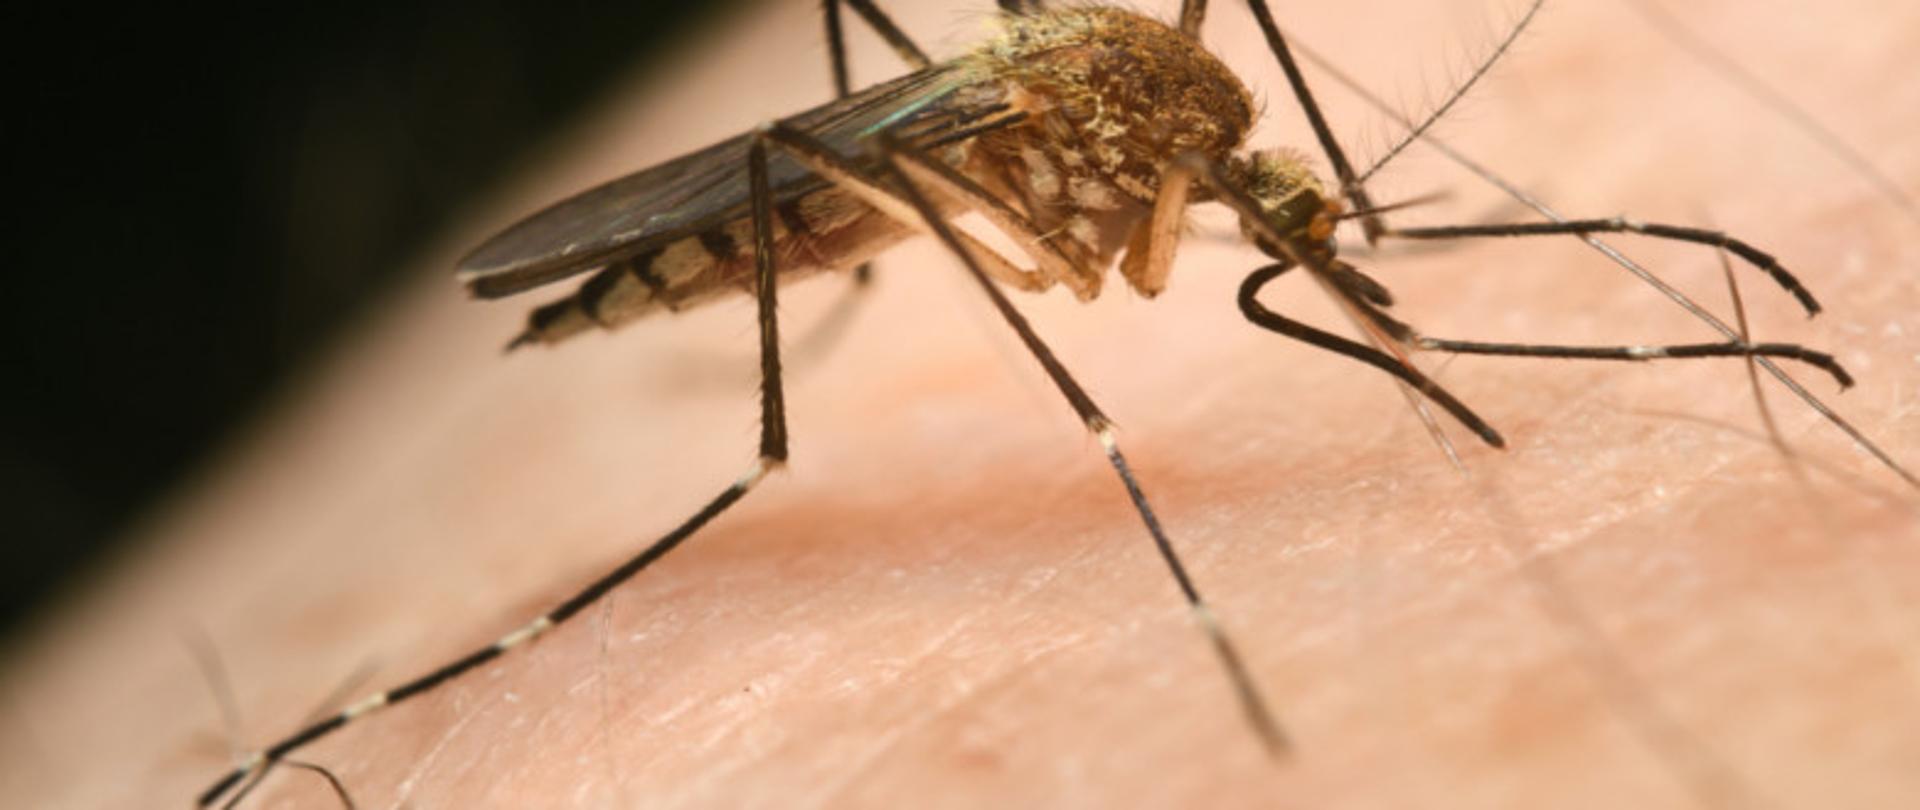 na zdjęciu widoczny w dużym przybliżeniu komar siedzący na ciele człowieka